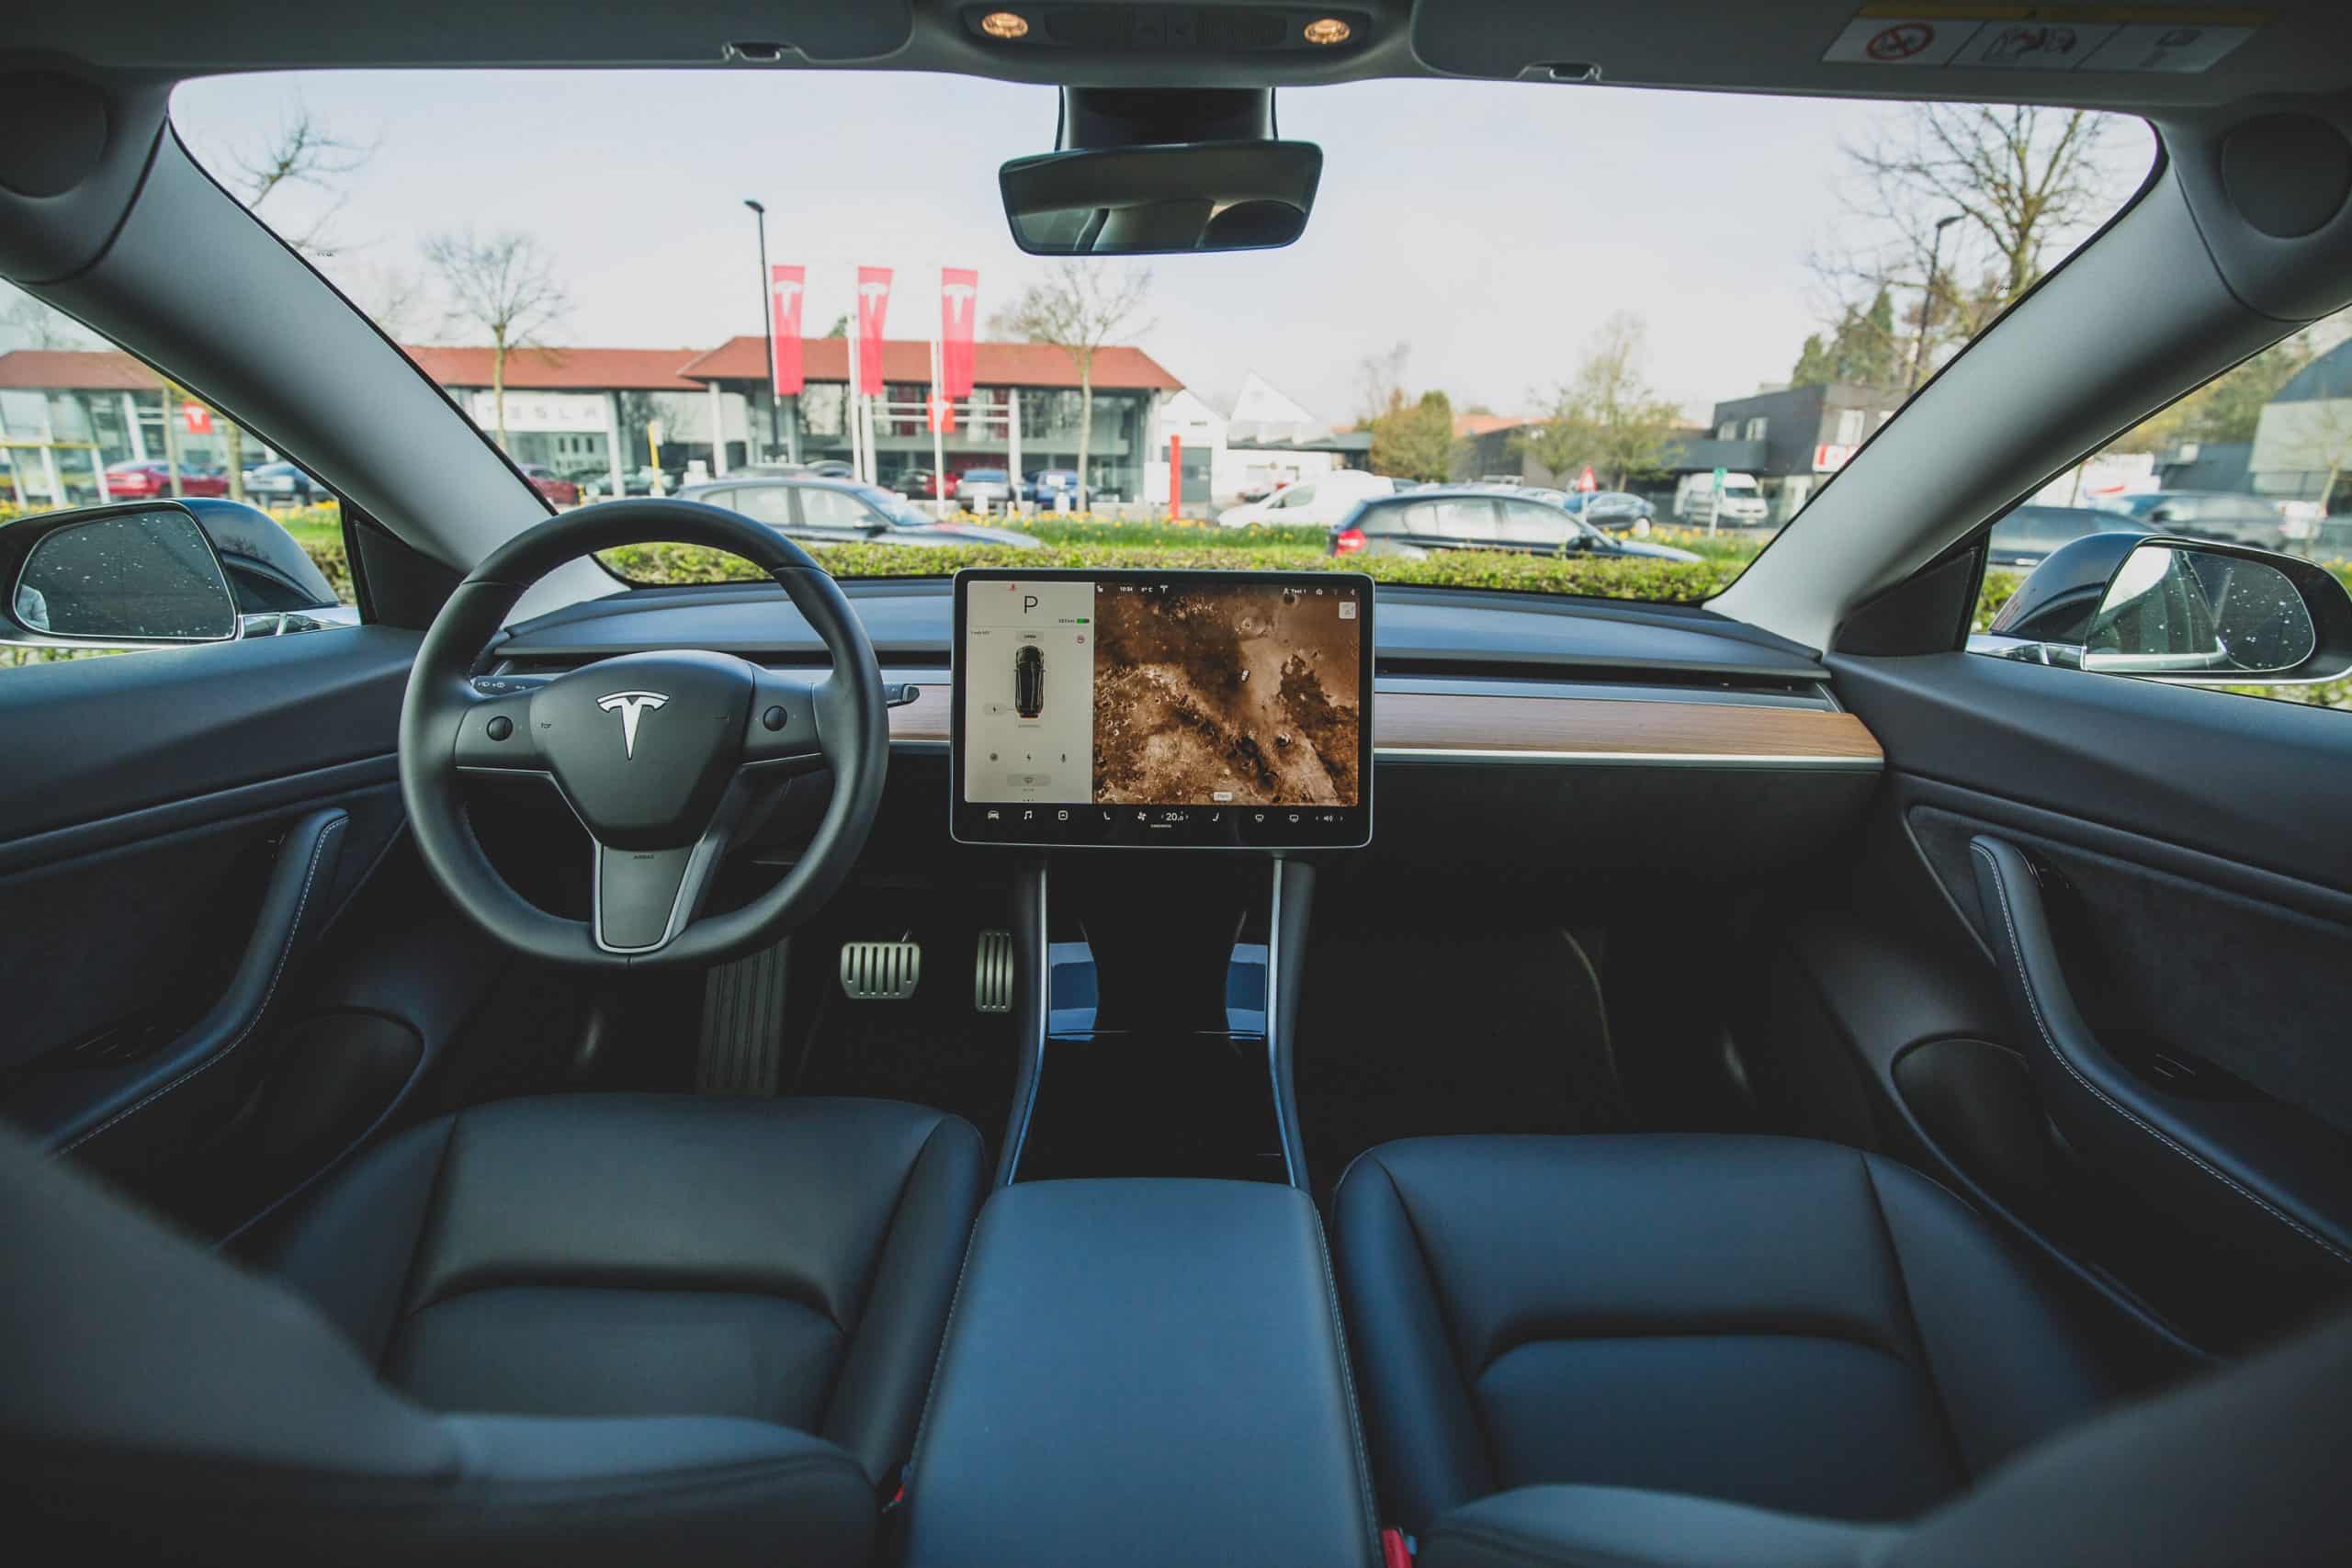 Aperçu de l'intérieur d'une Tesla.